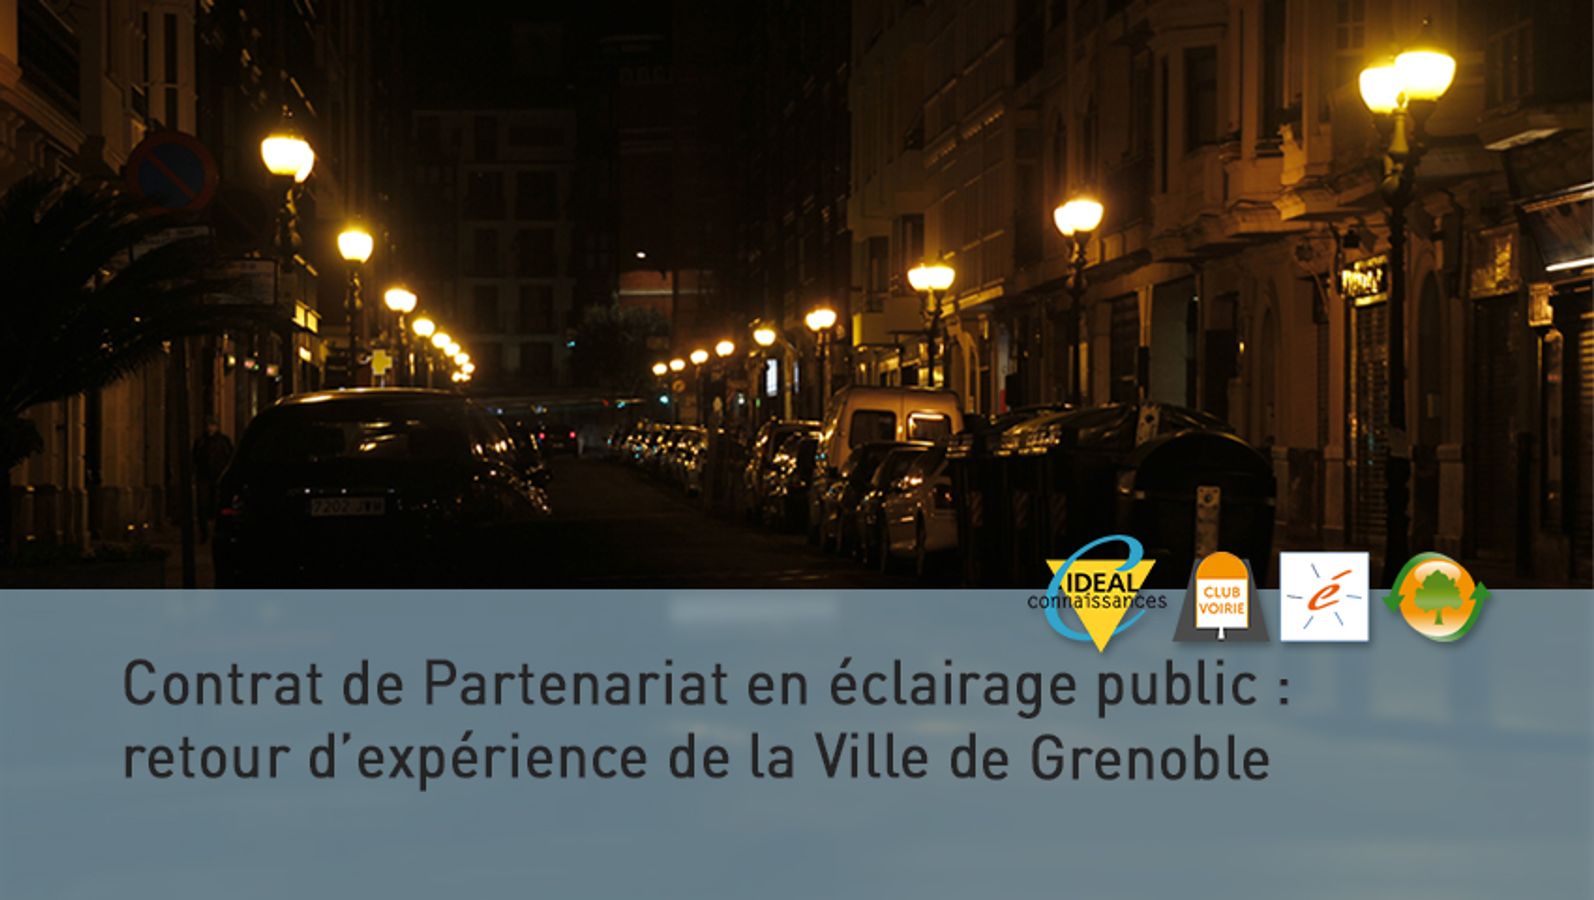 Contrat de Partenariat en éclairage public : Retour d’expérience de la Ville de Grenoble